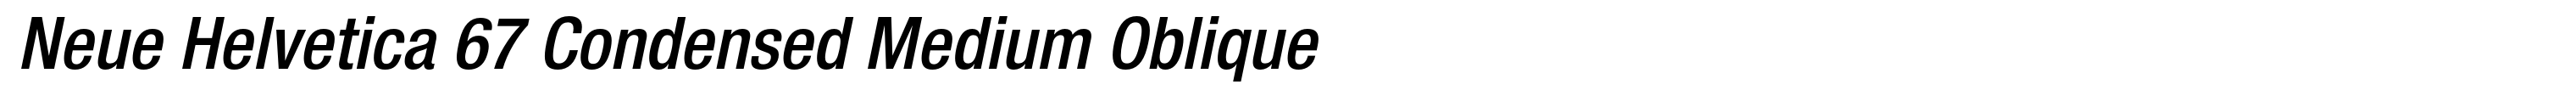 Neue Helvetica 67 Condensed Medium Oblique